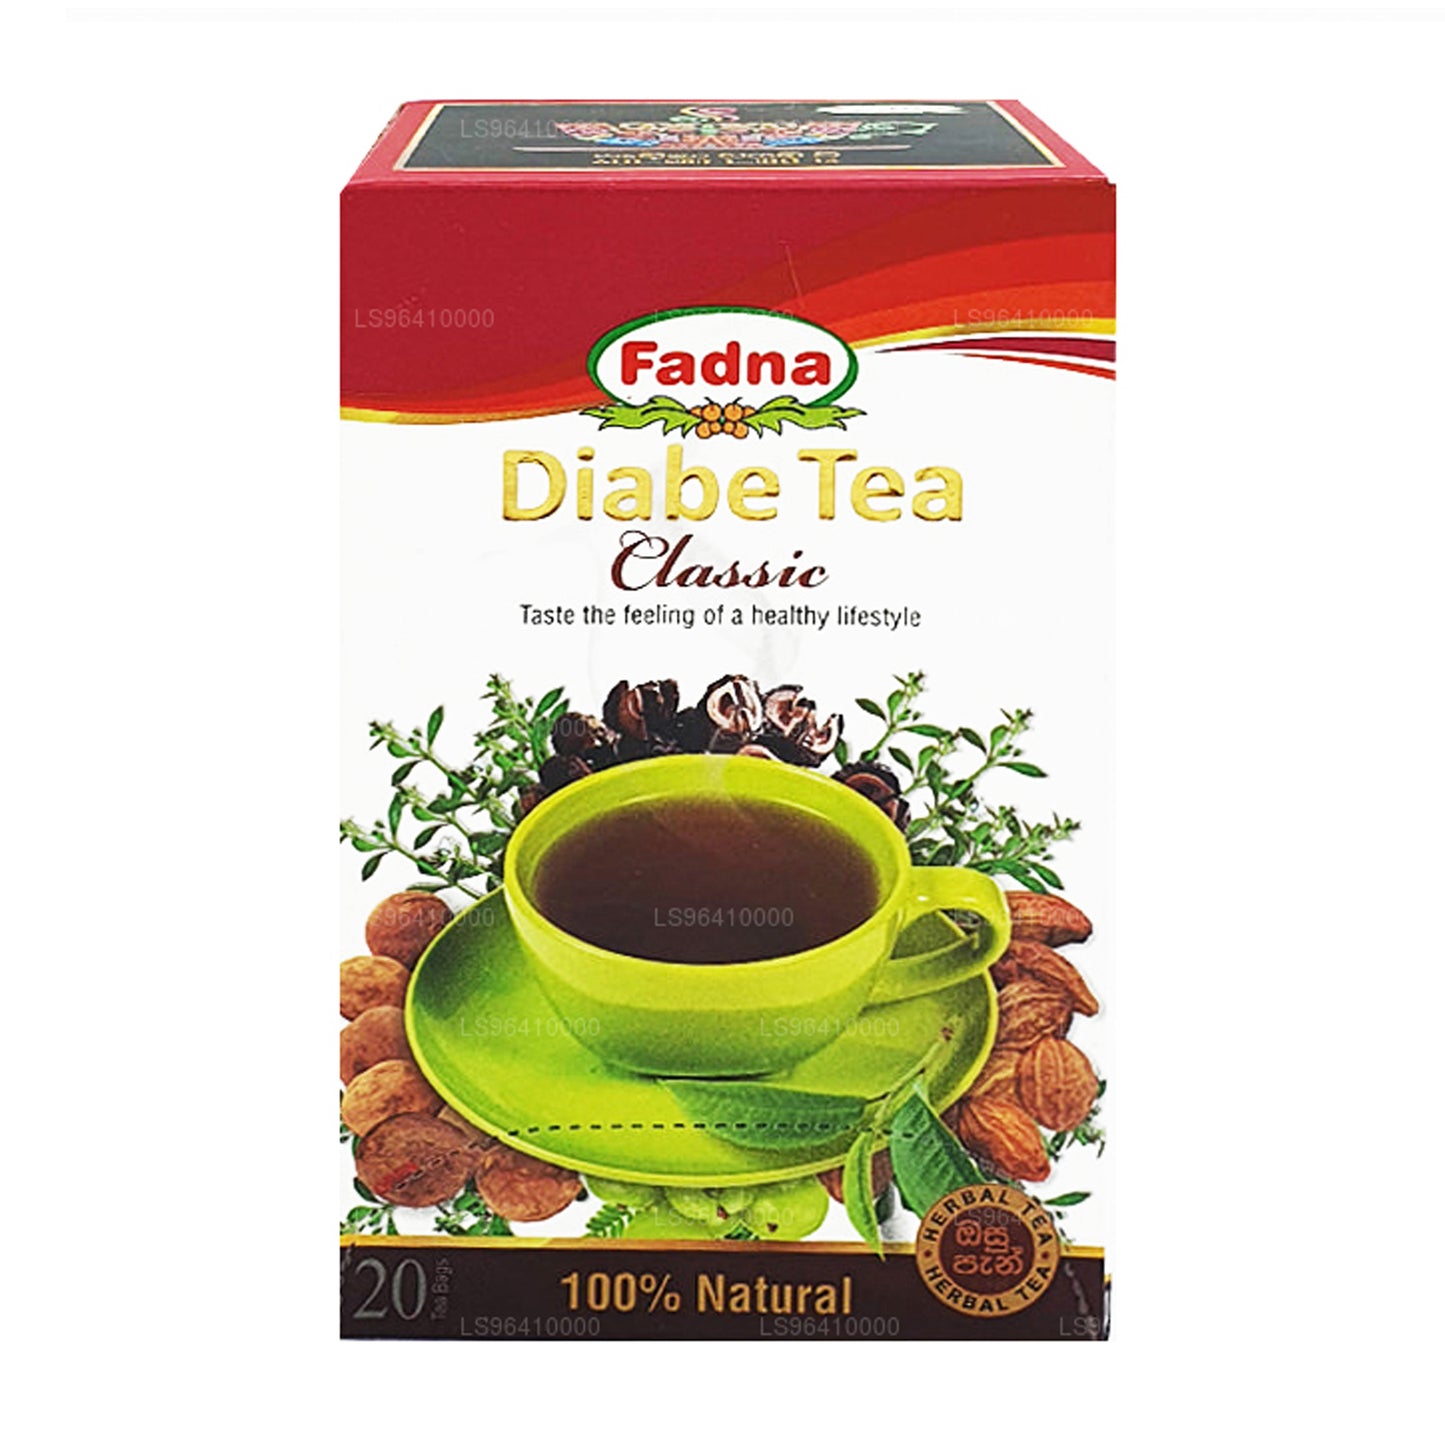 Fadna Diabe Tea (40g) 20 Tea Bags